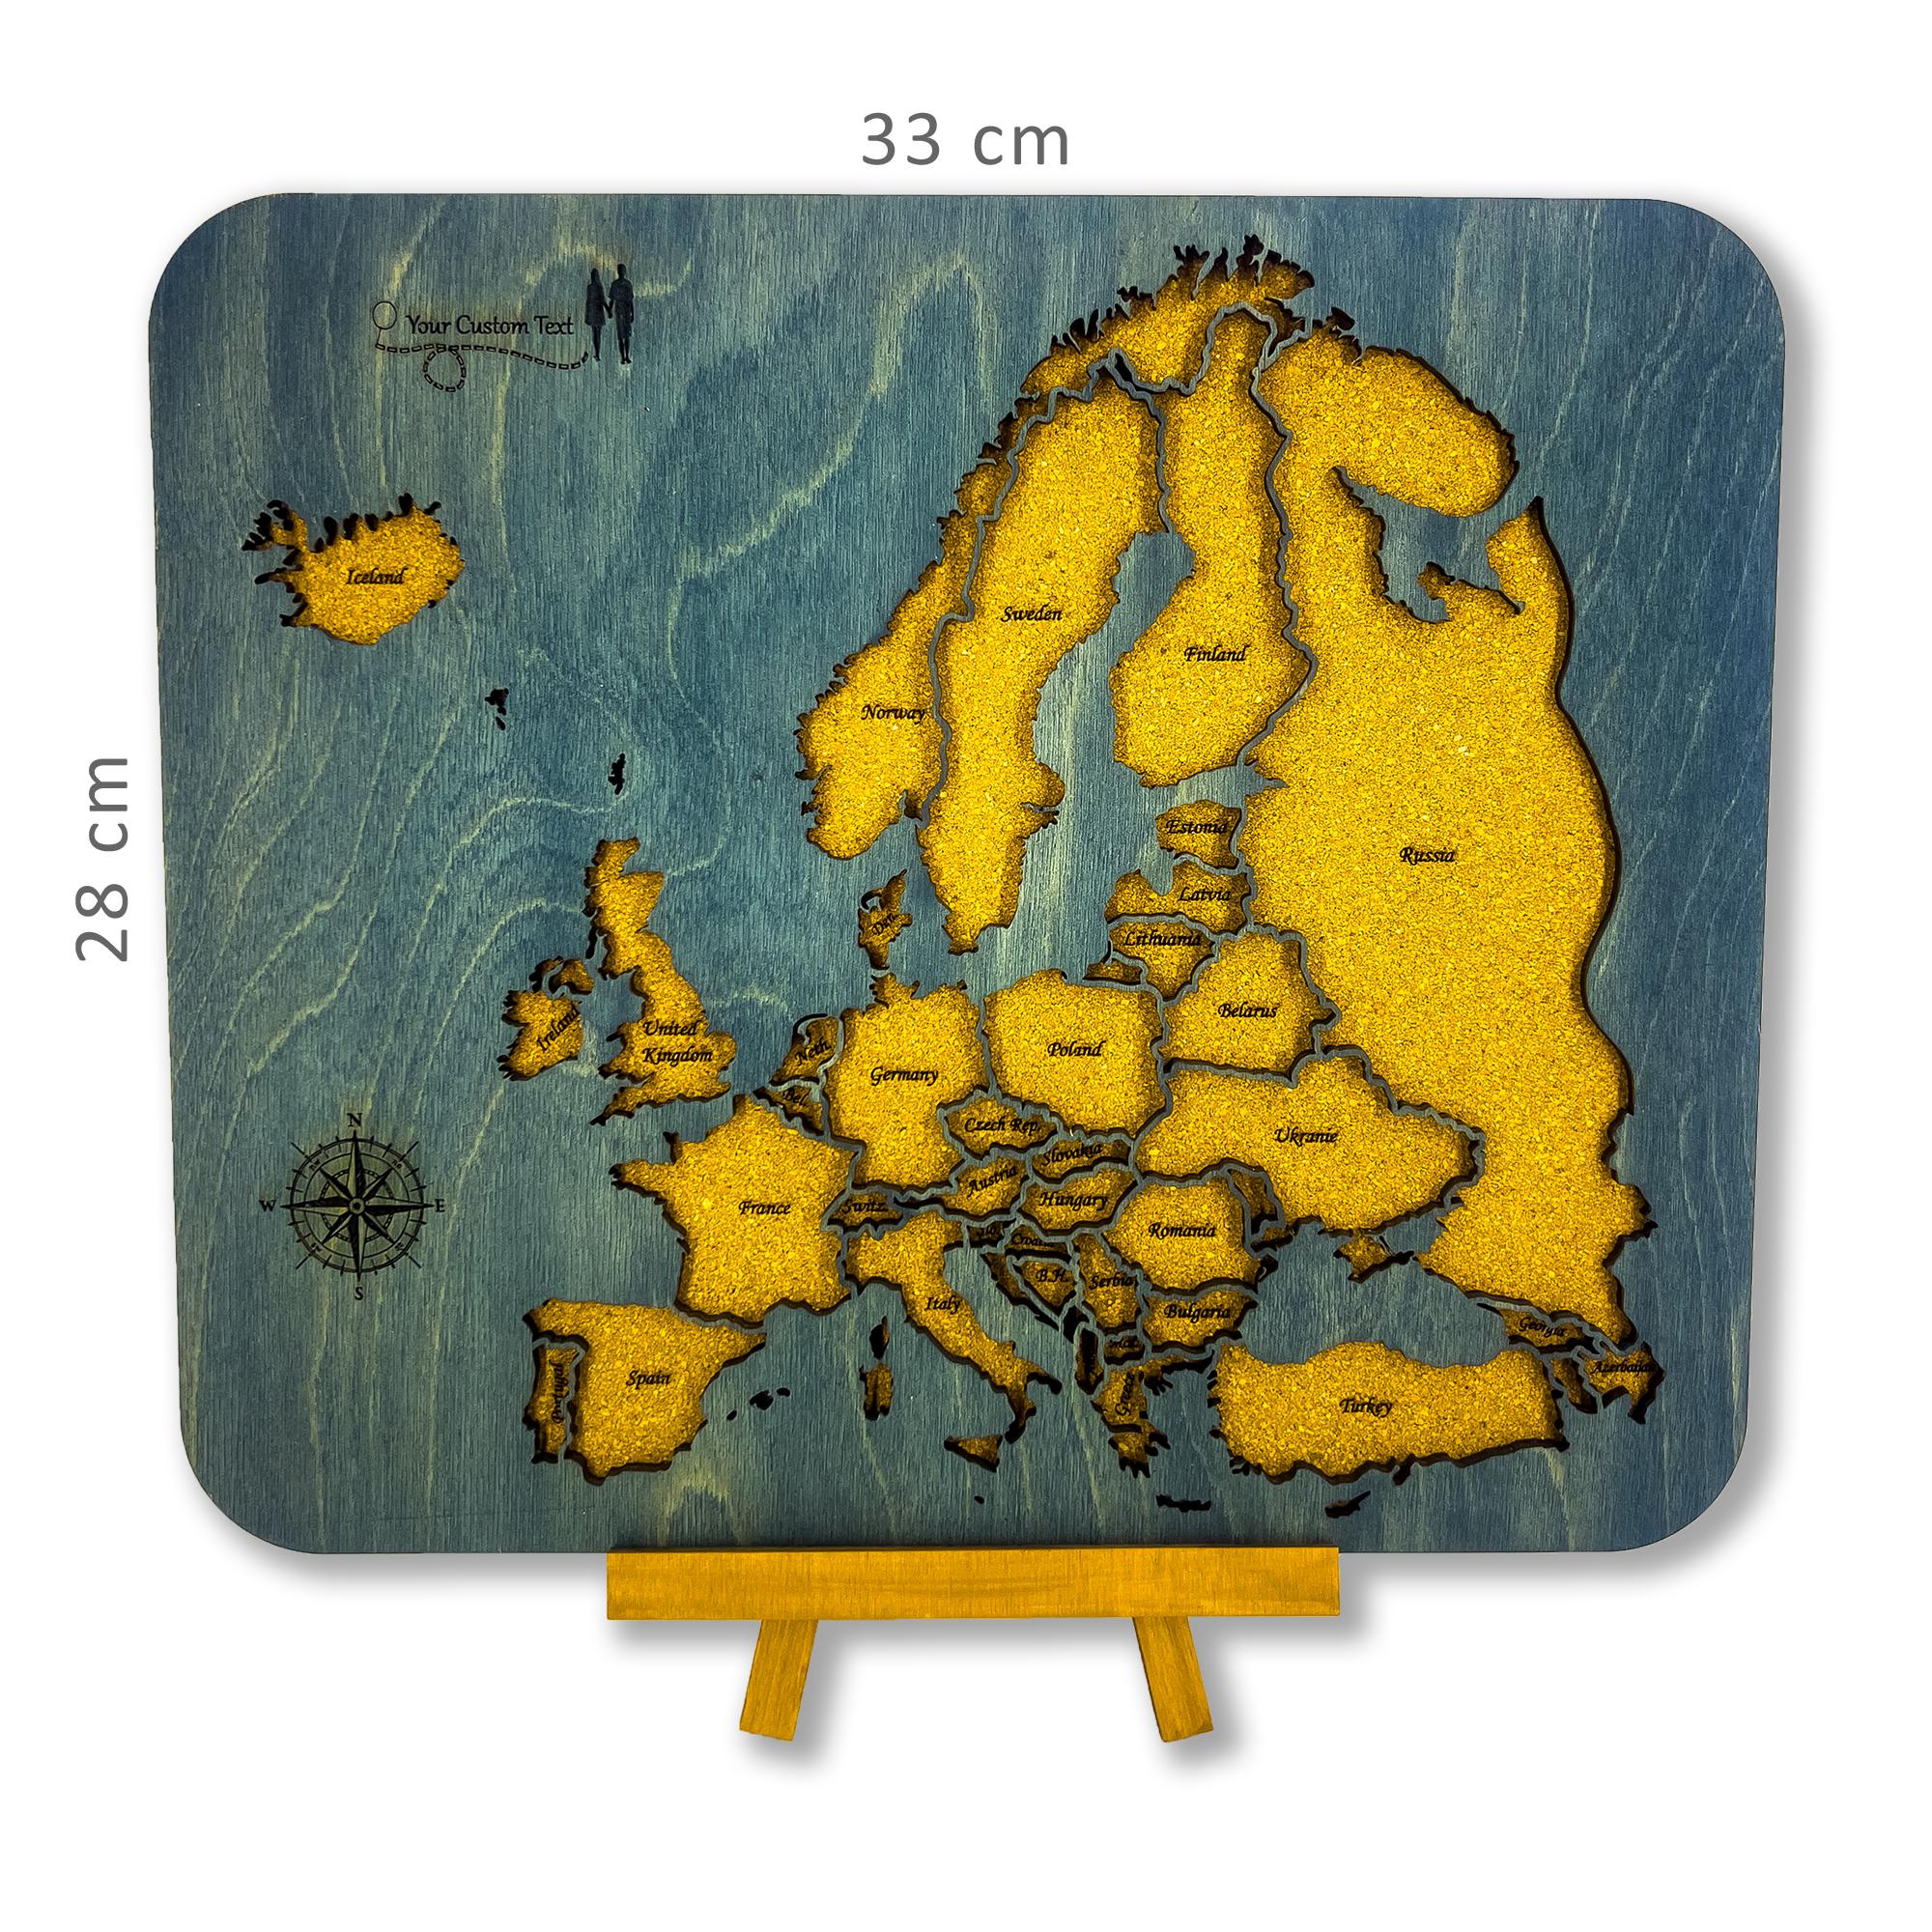 704 - Masaüstü Avrupa Haritası (Ahşap ve Mantar)